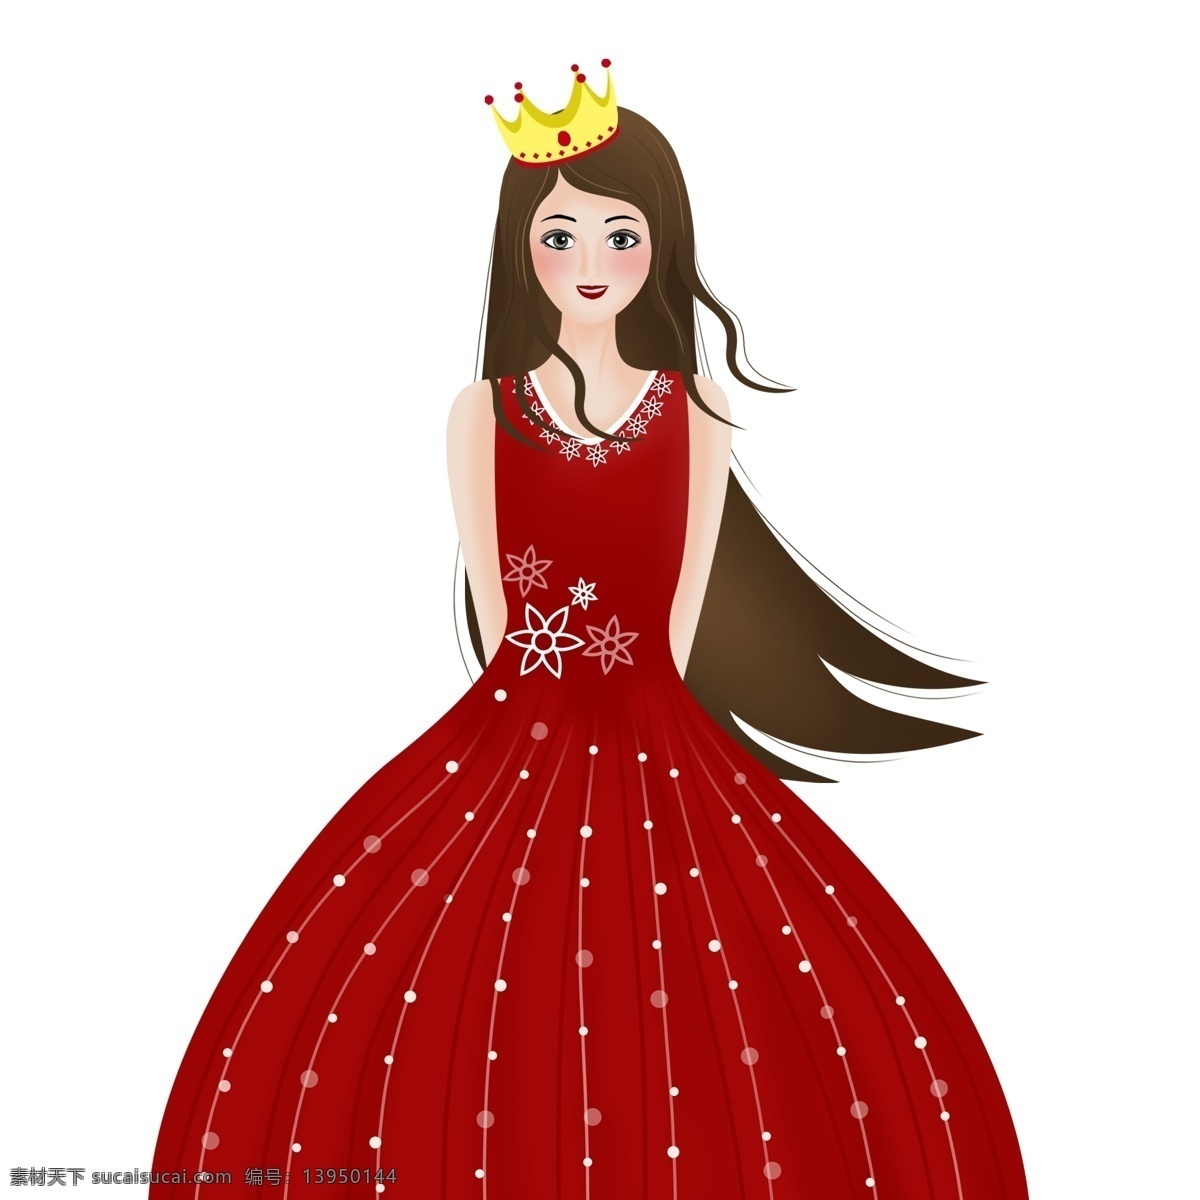 卡通 可爱 穿 红色 礼服 公主 女孩 女生 女王 皇冠 插画 人物素材